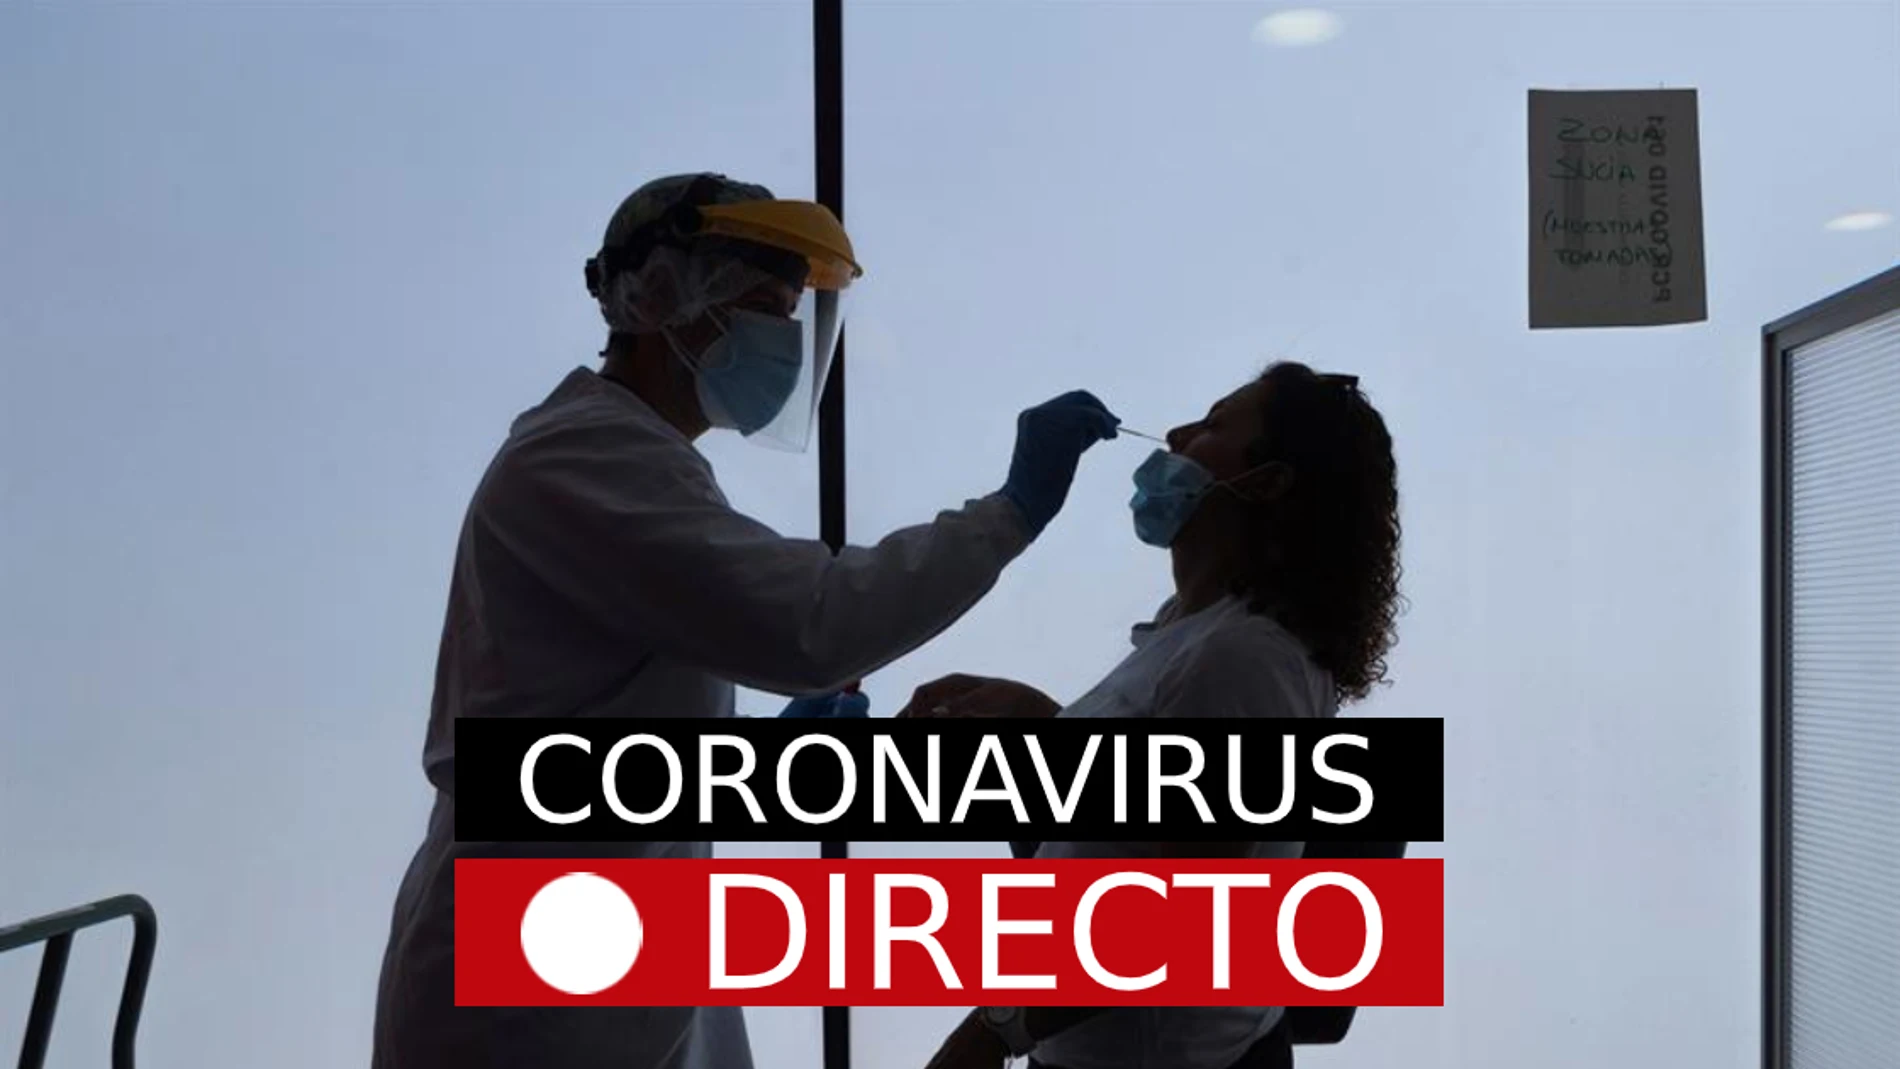 Coronavirus | Directo